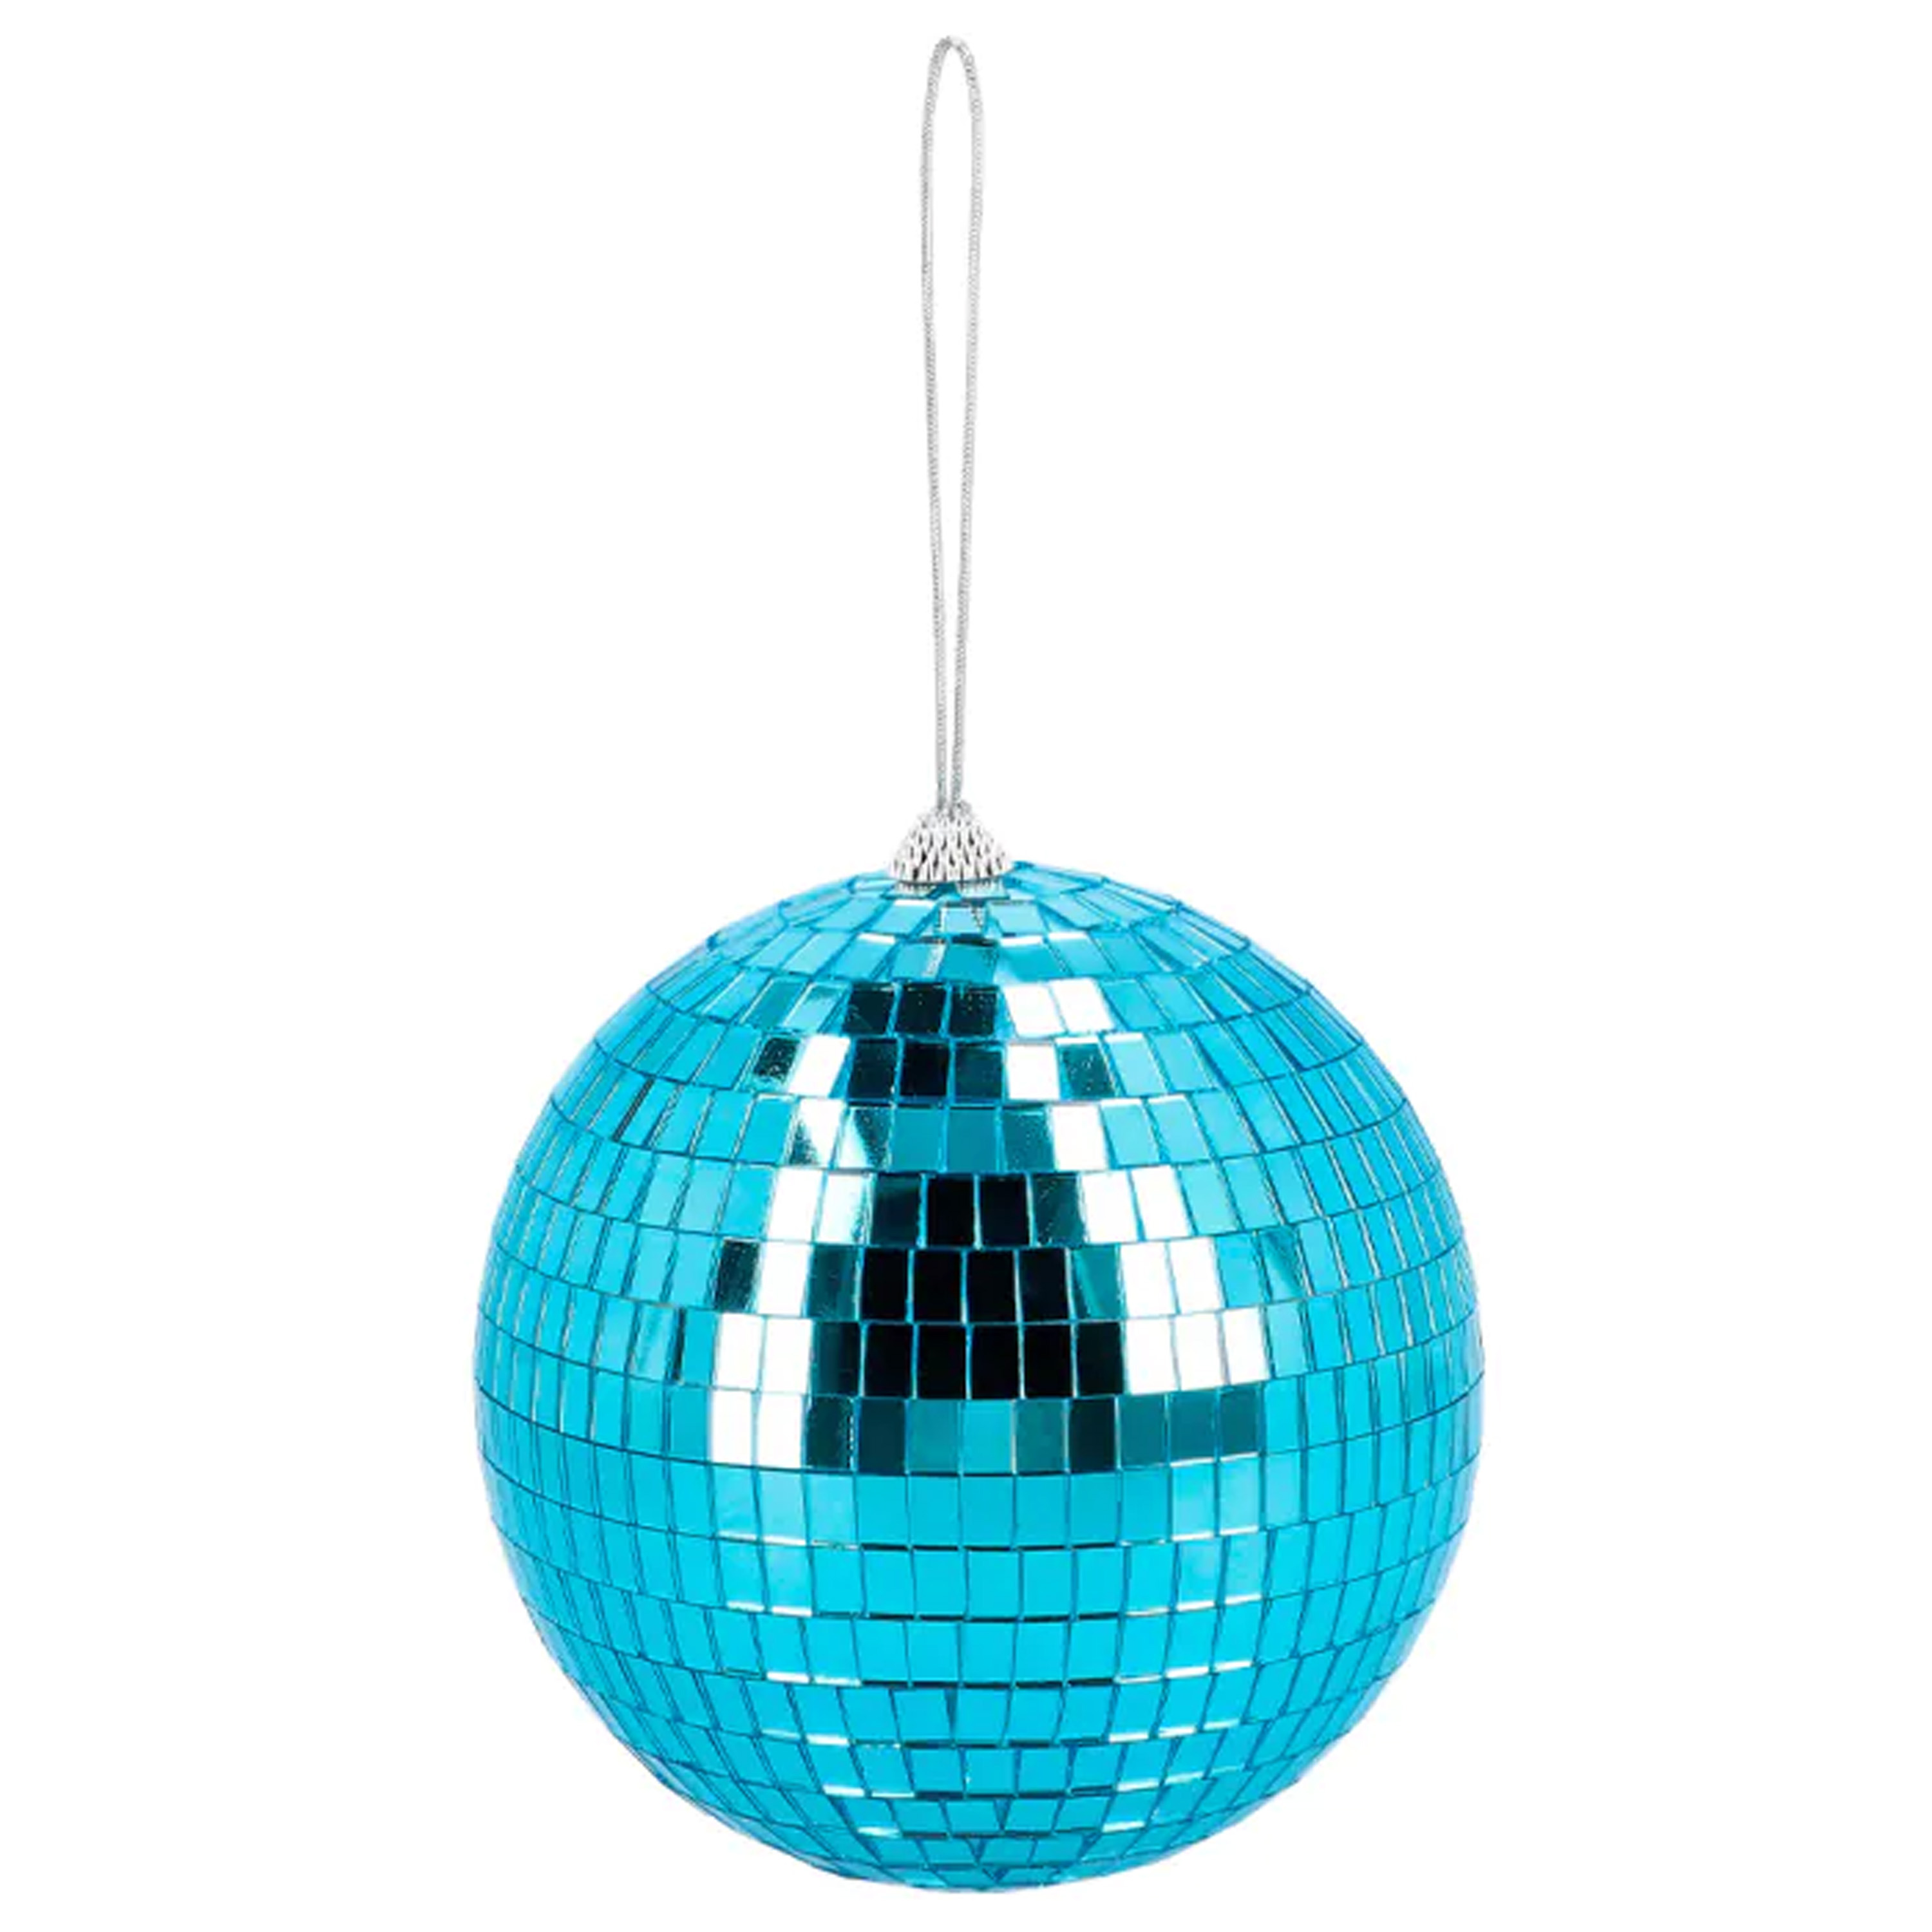 Disco spiegel bal rond blauw Dia 15 cm Seventies-eighties thema versiering